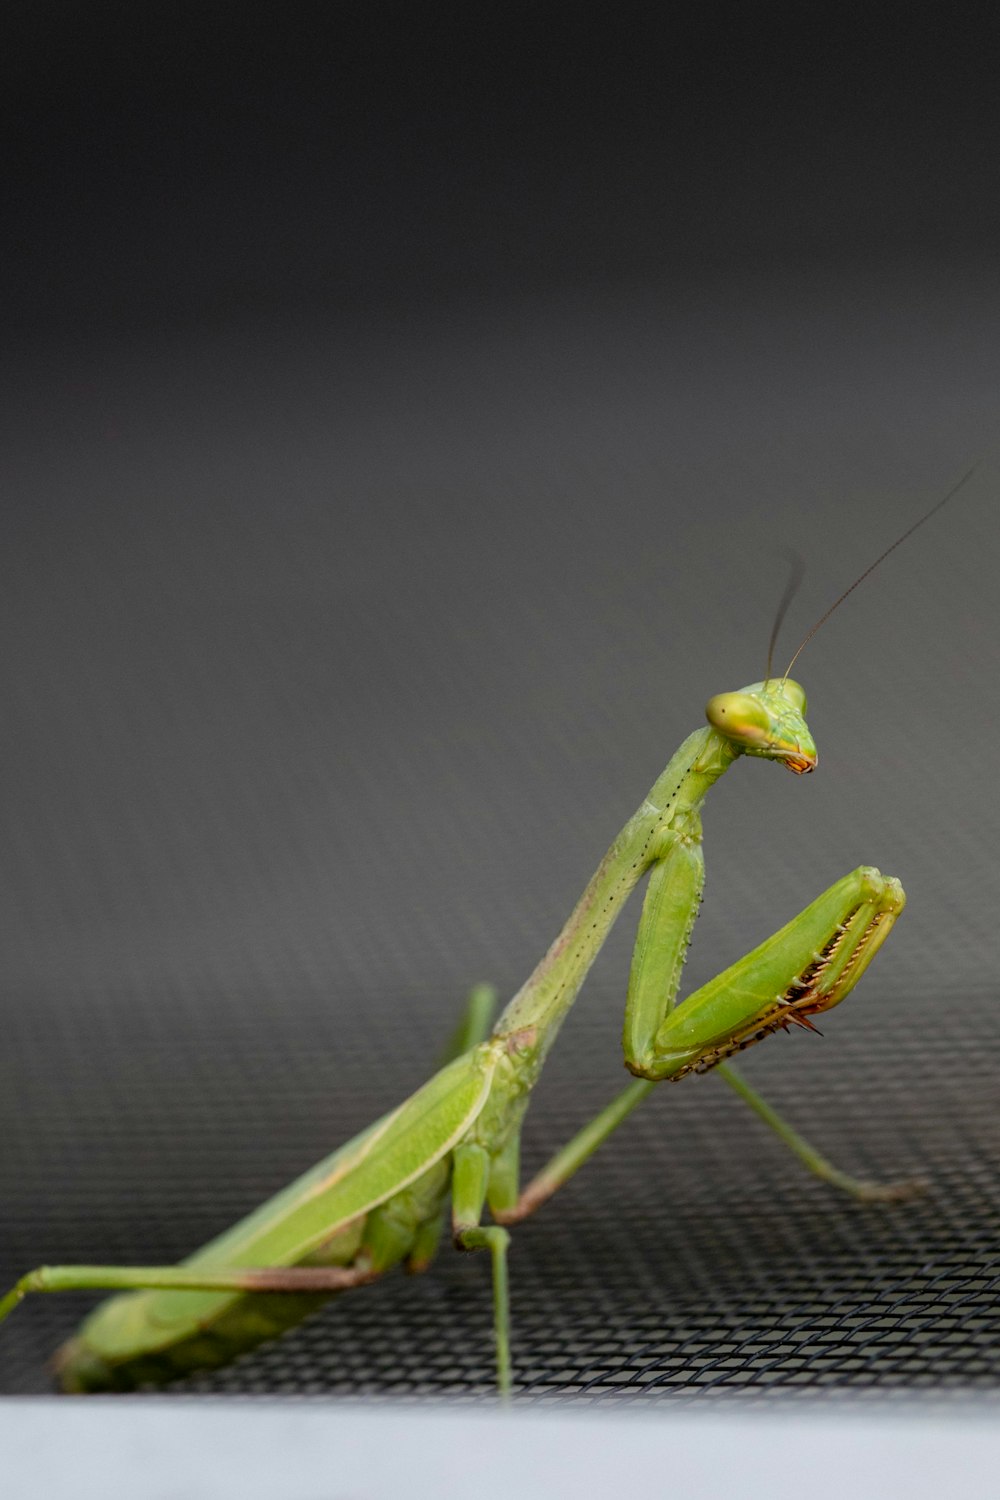 green praying mantis on grey surface